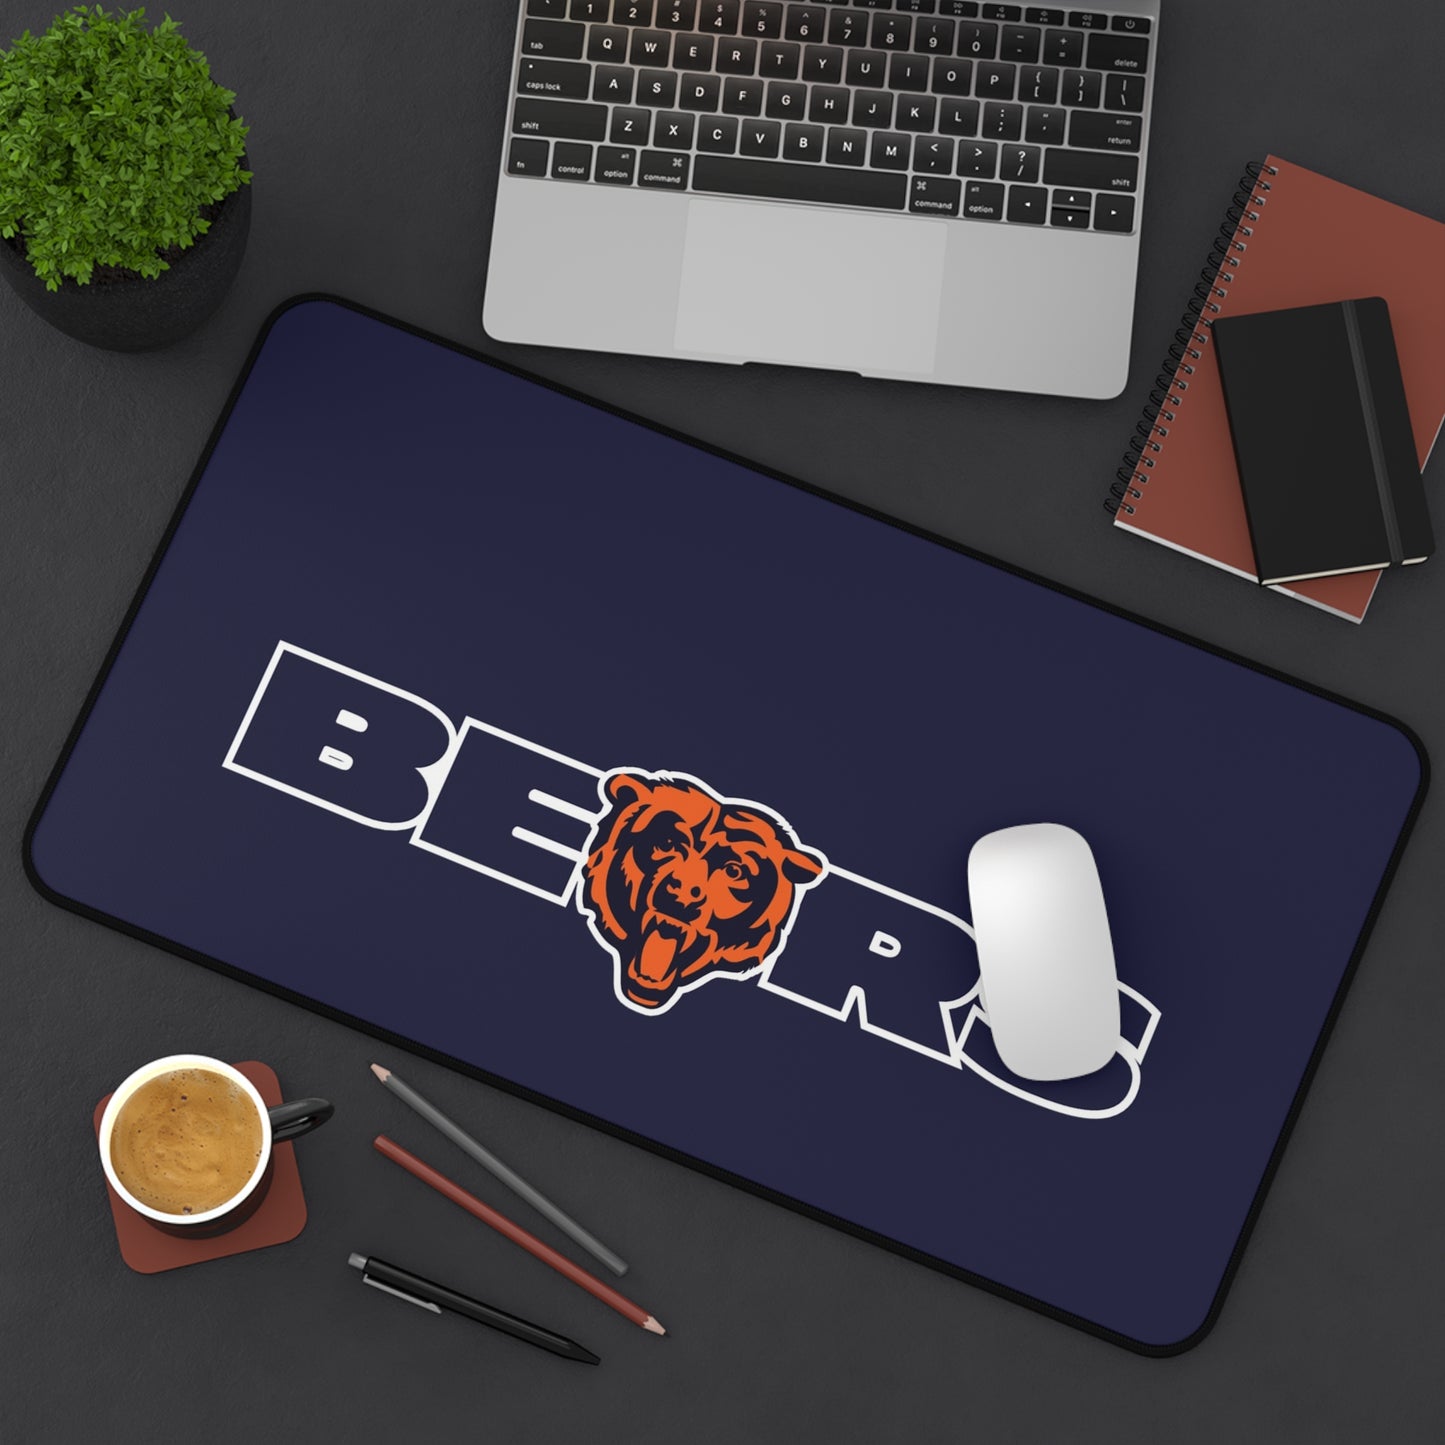 Chicago Bears Mascot Blue NFL Football High Definition PC Desk Mat Mousepad